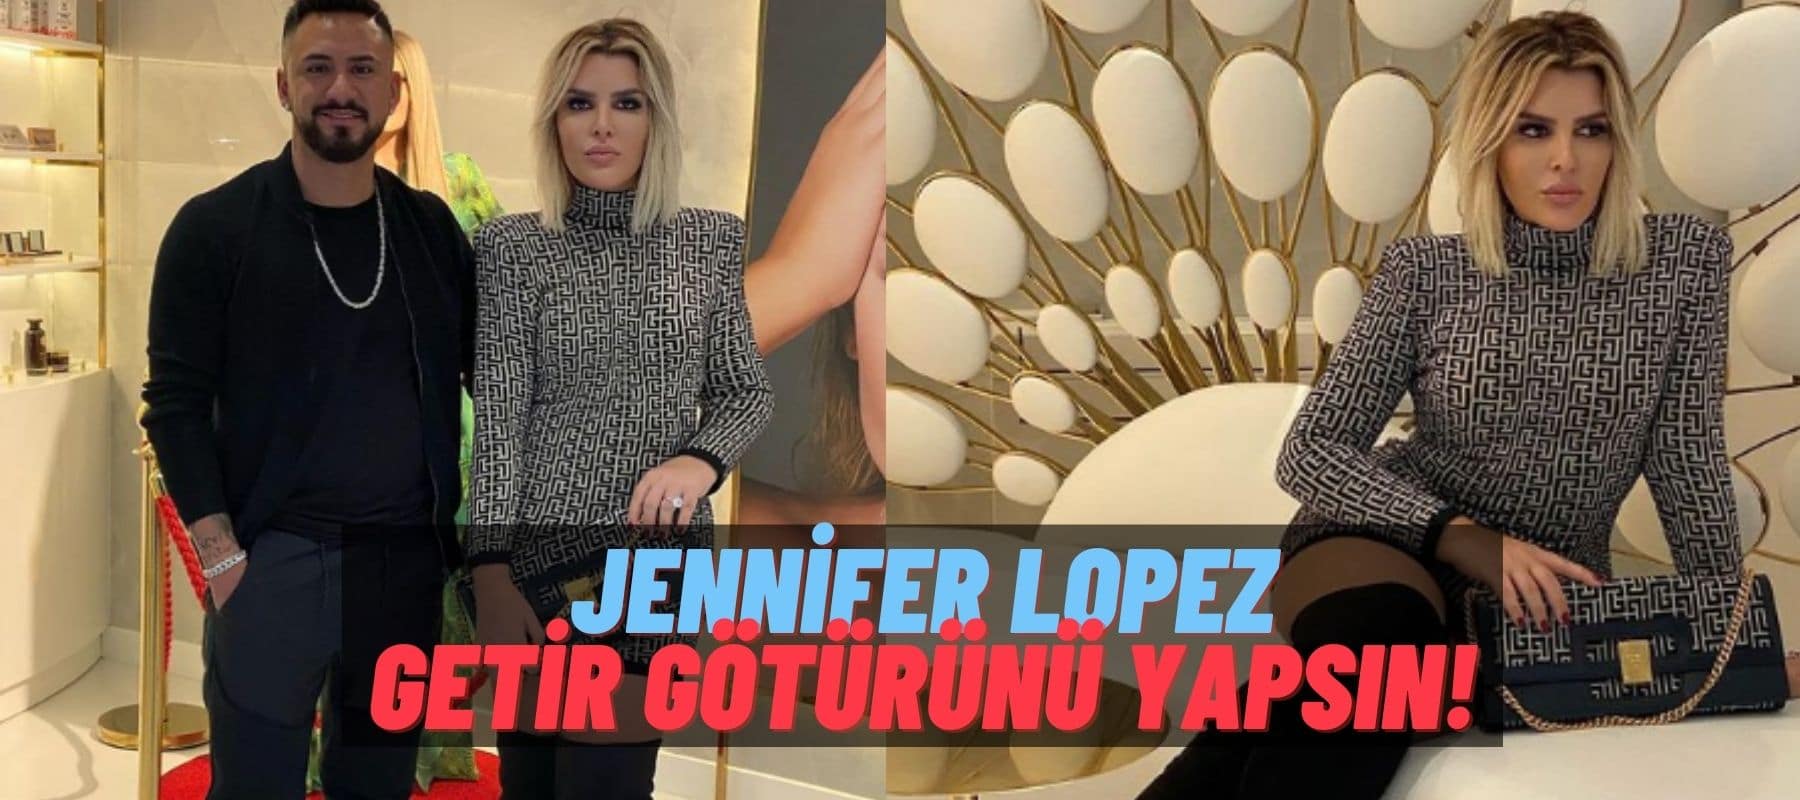 Ünlü Fenomen Selin Ciğerci Kendisini Jennifer Lopez’le Karşılaştırdı: “Neyim Eksik?”